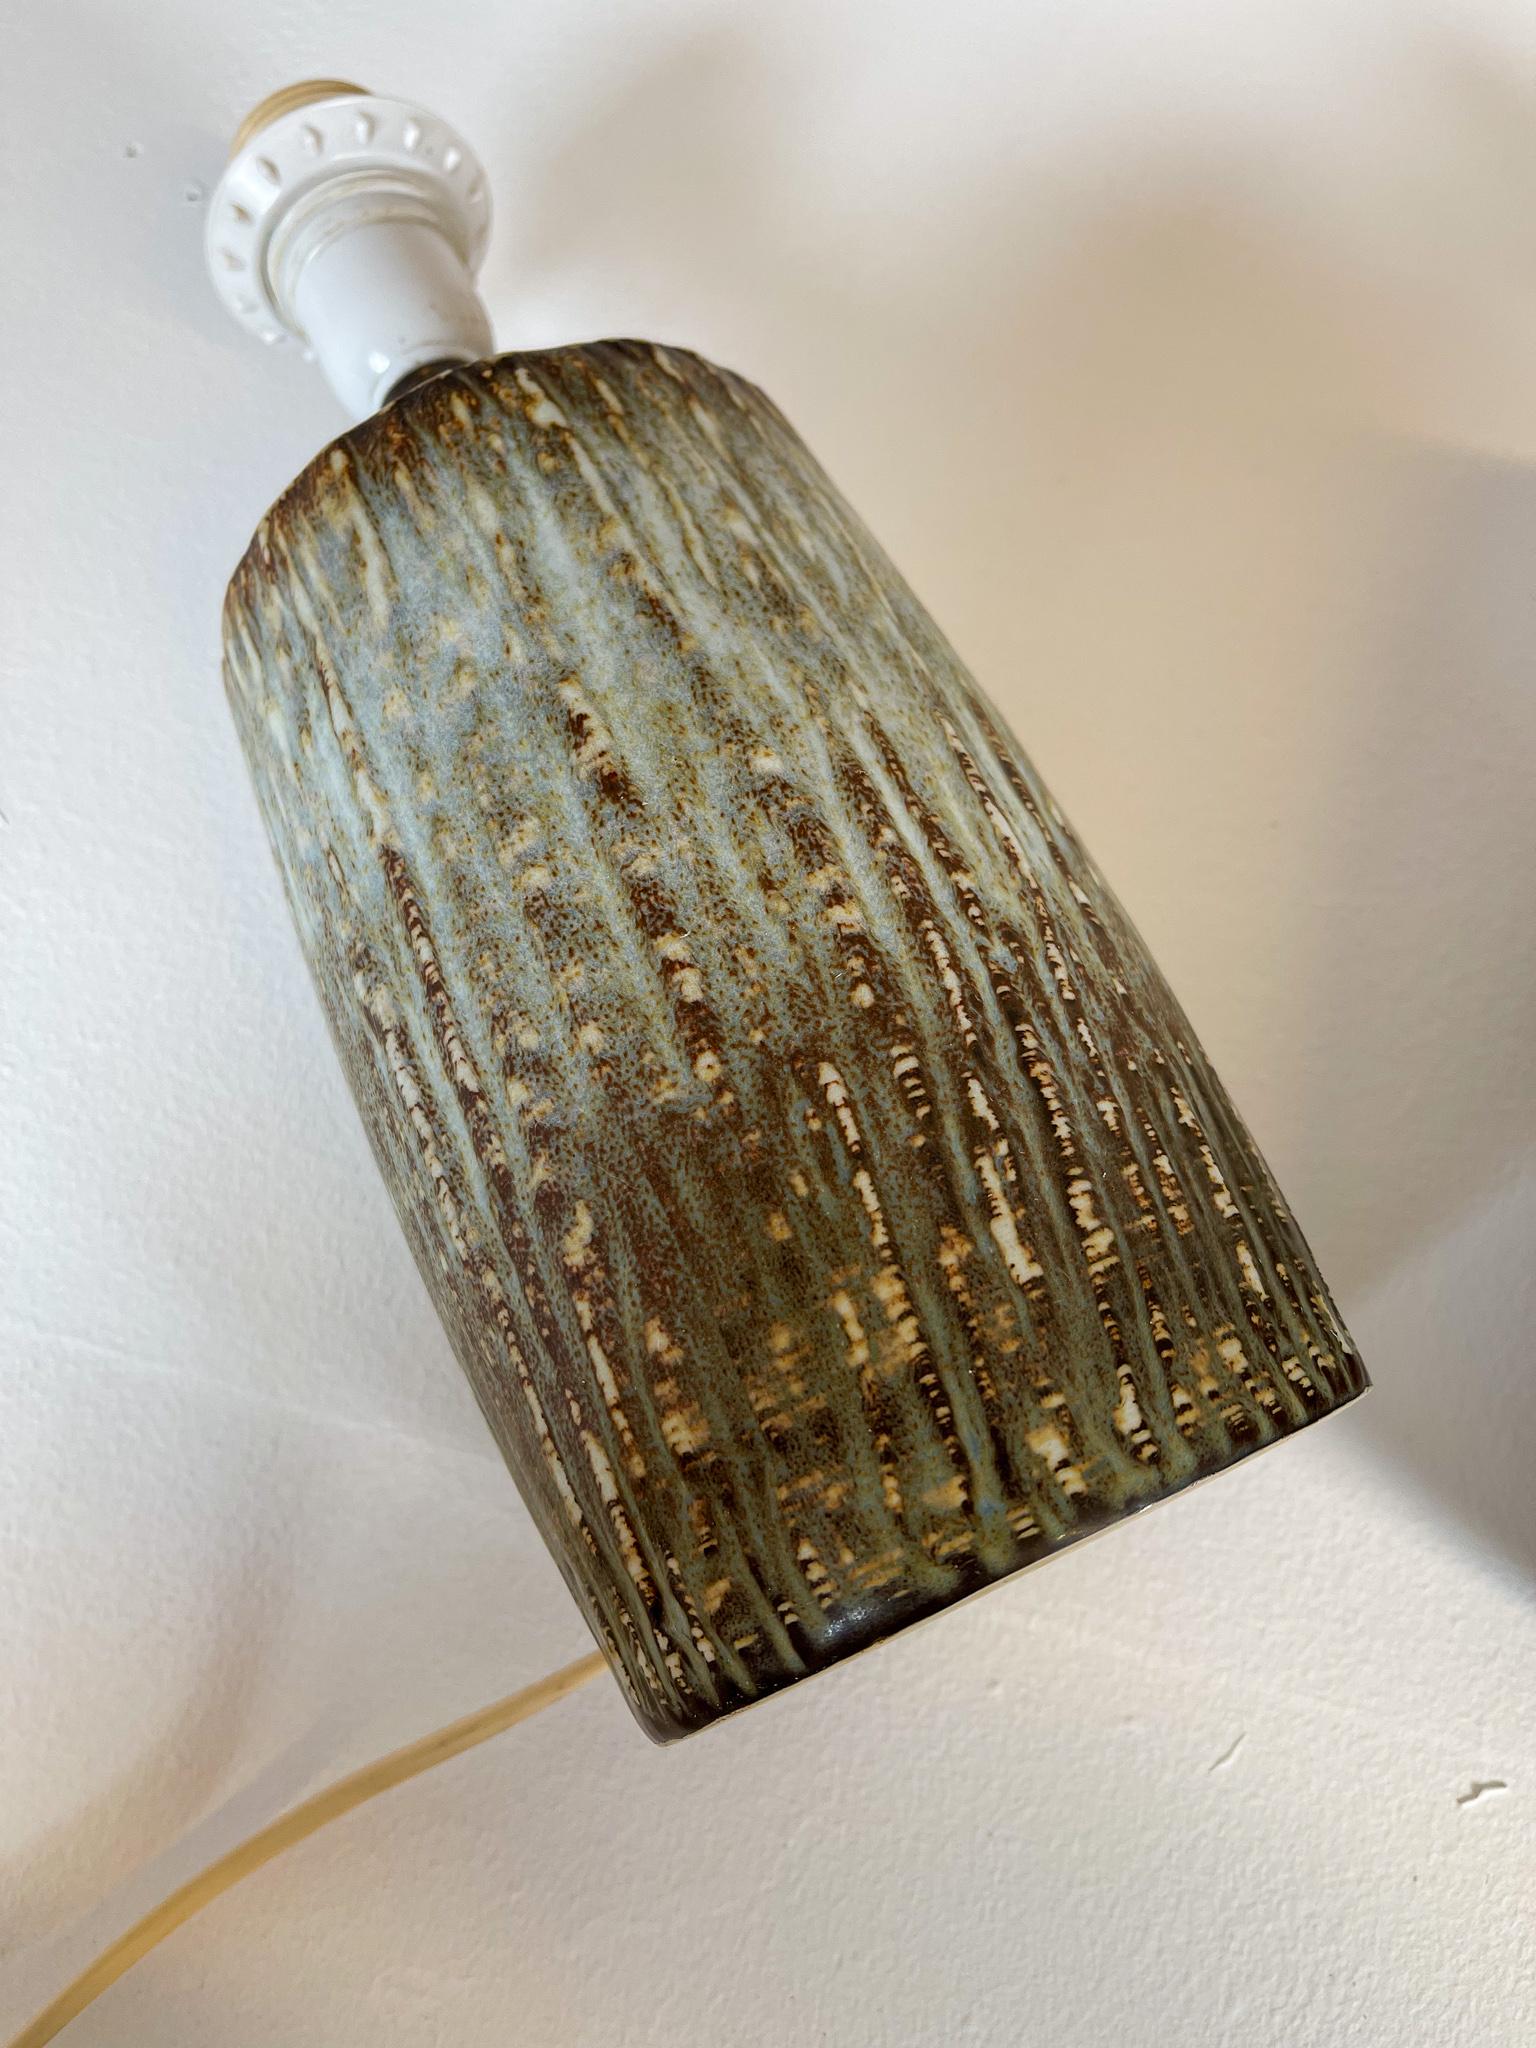 Mid-Century Pair of Ceramic Table Lamps 